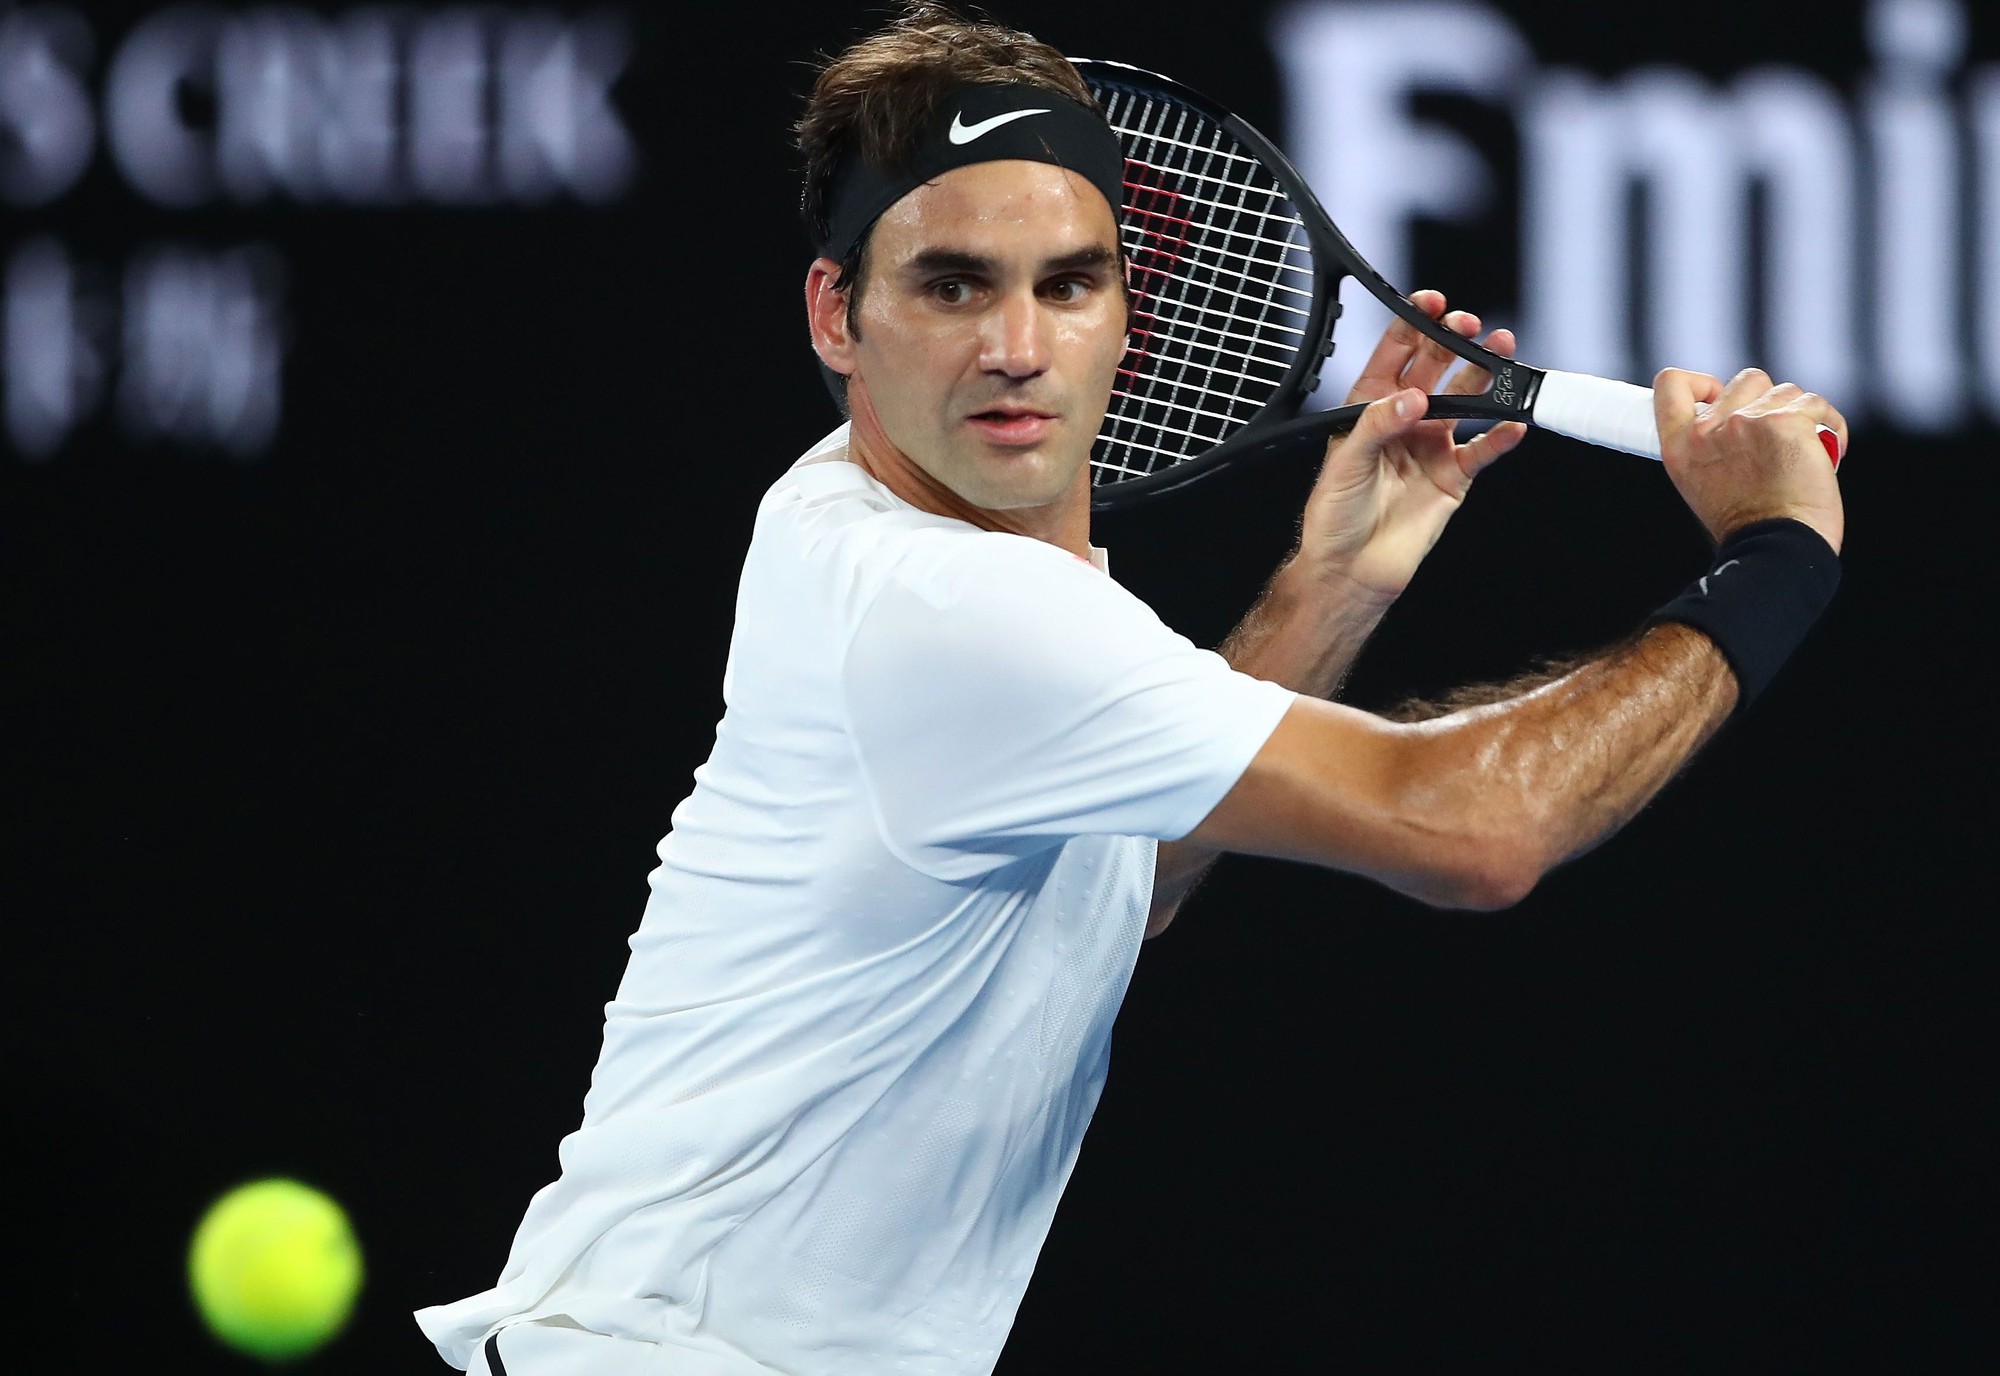 Nhờ quần vợt, Roger Federer kiếm được hơn... 1 tỷ USD - Ảnh 1.